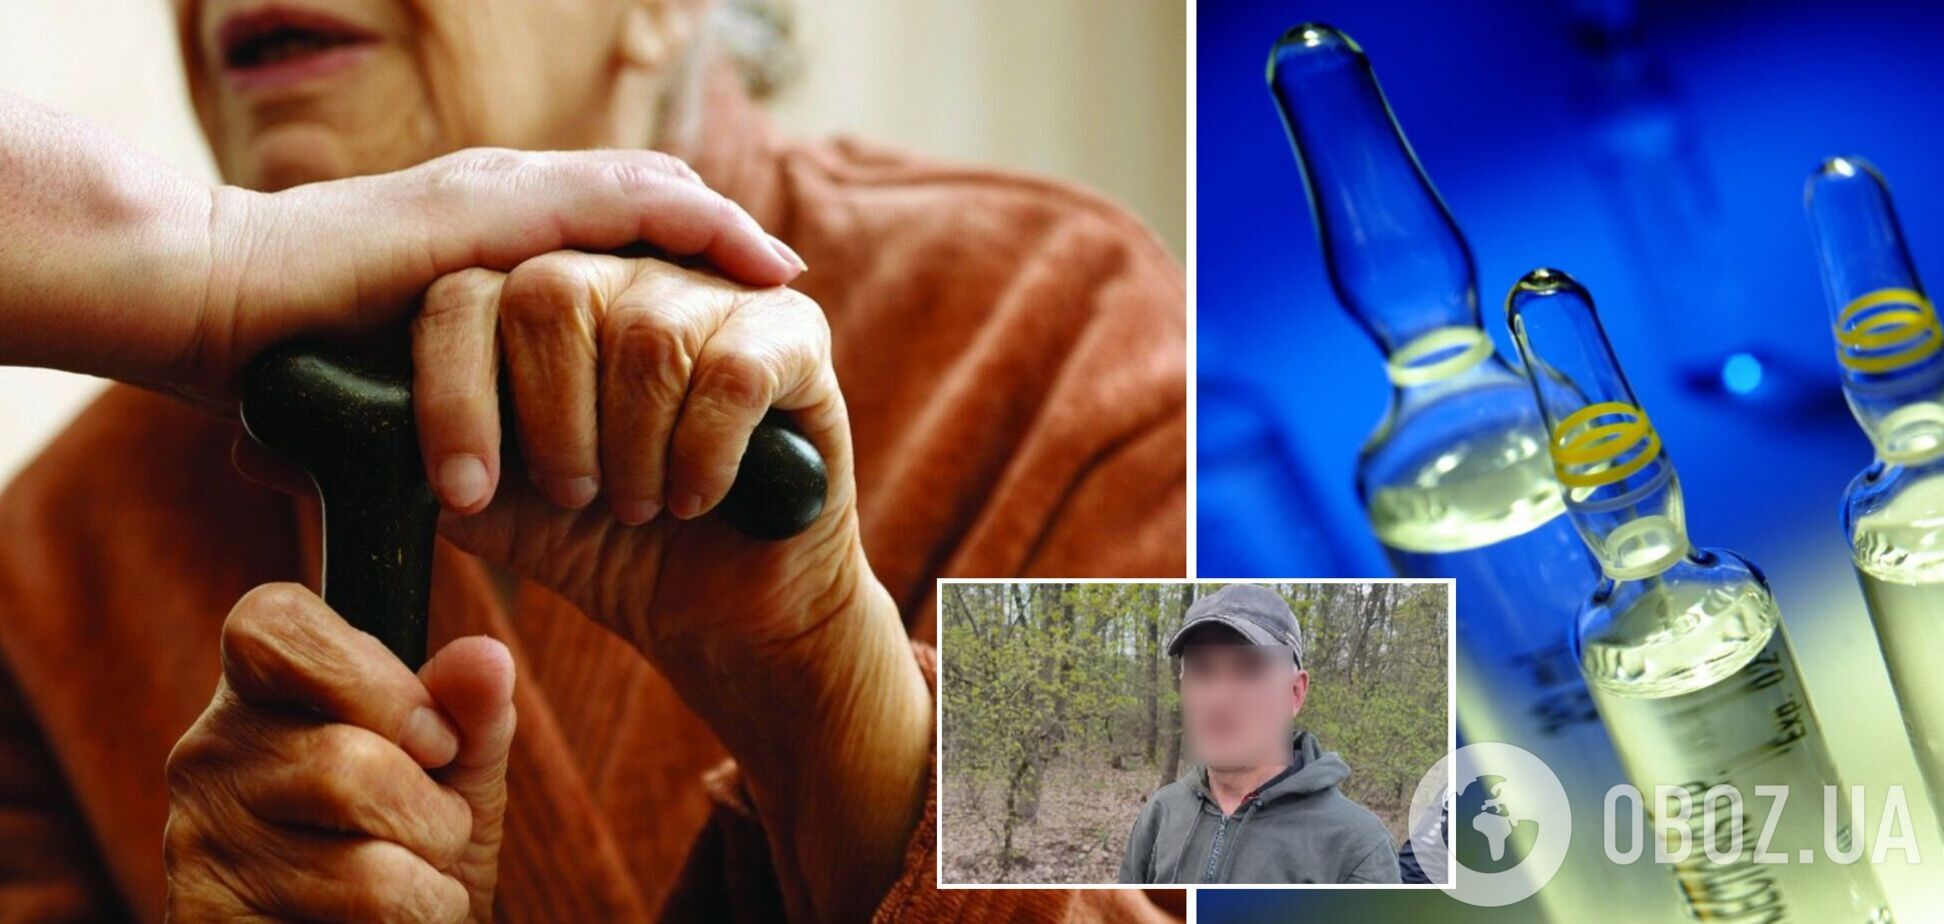 Представился фельдшером: в Сумской области мужчина ограбил пенсионеров, введя им снотворное вместо вакцины